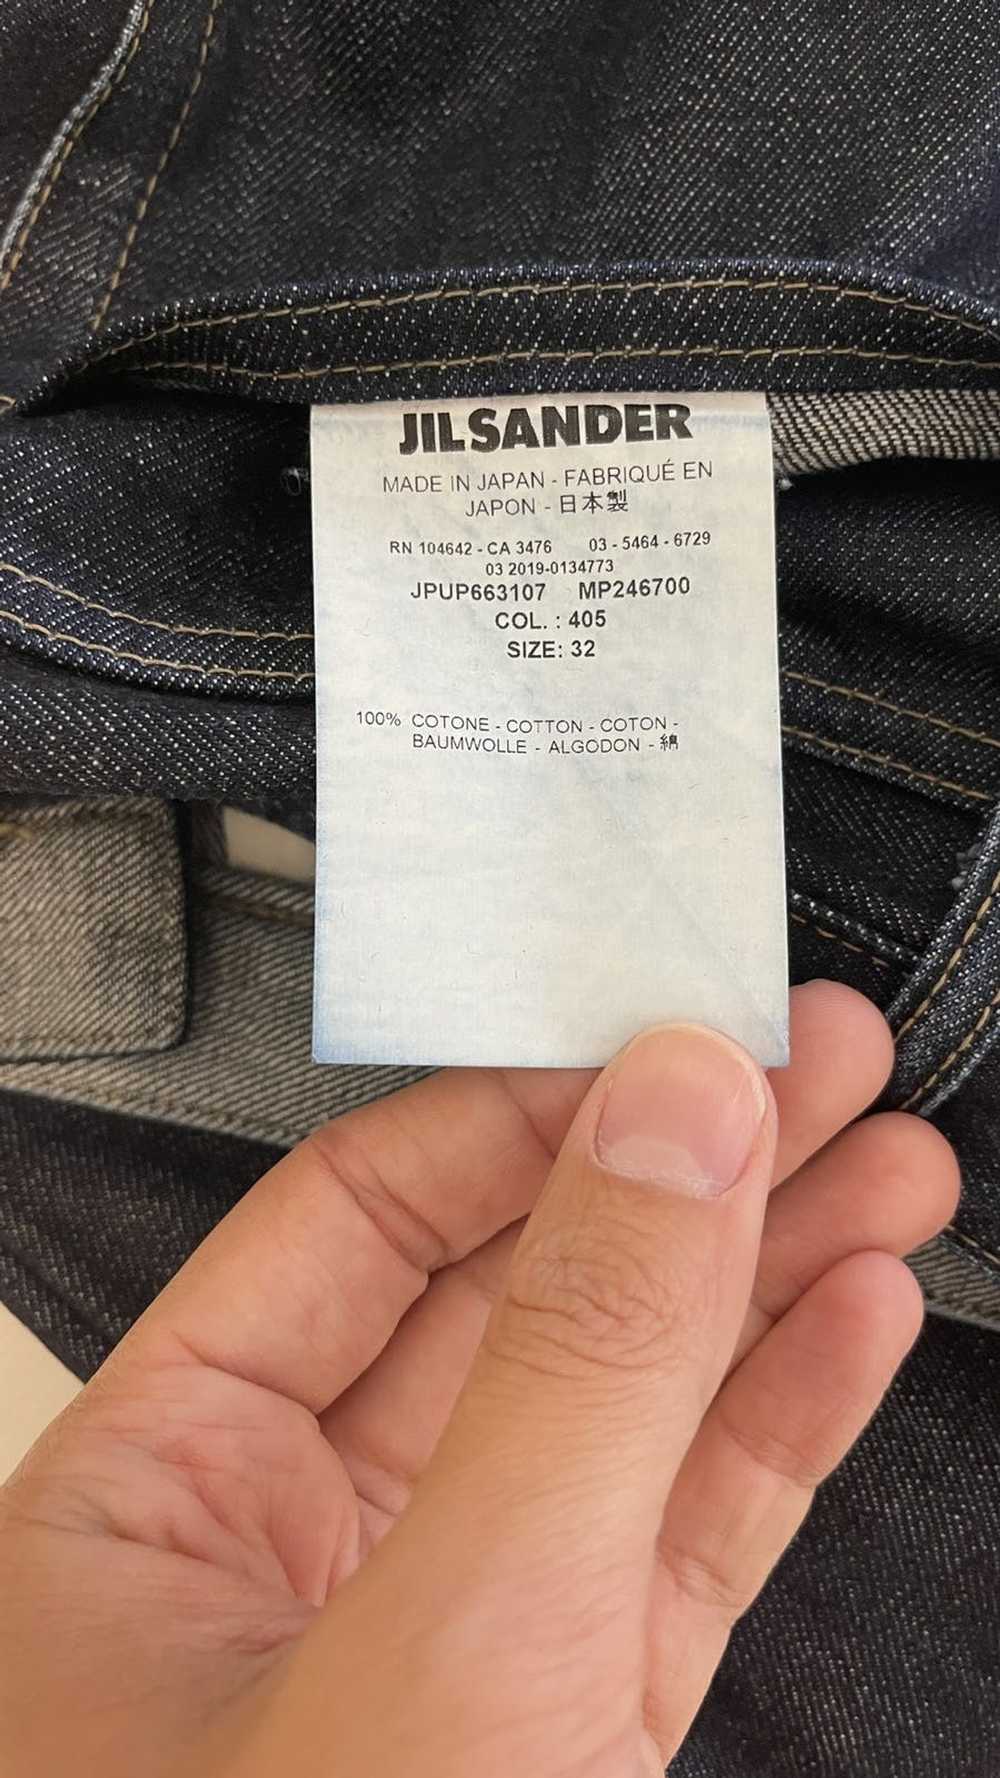 Jil Sander JIL SANDER Japanese Denim Jeans - image 5